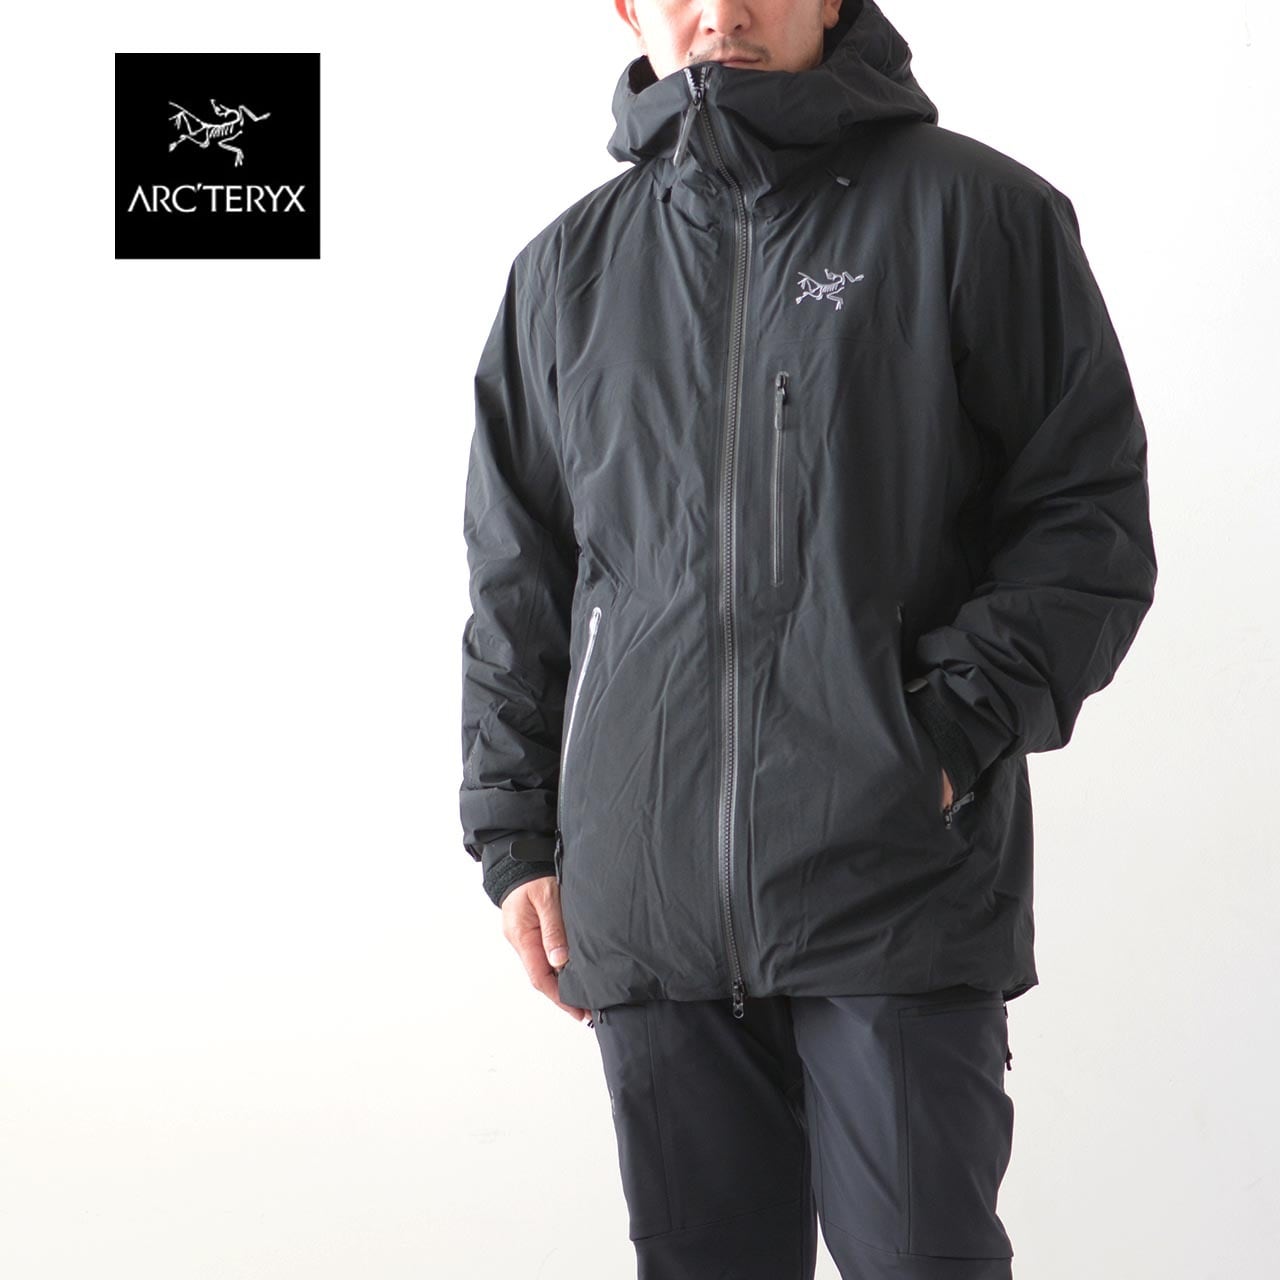 ARC'TERYX [アークテリクス正規代理店] Beta Insulated Jacket Men's [29702] ベータ インサレーテッド ジャケット  メンズ・フードジャケット・フード付パーカ・防水・防風・保温・GORE-TEX・スキー・スノーボード・アウトドア・MEN'S [2022AW]  refalt online store